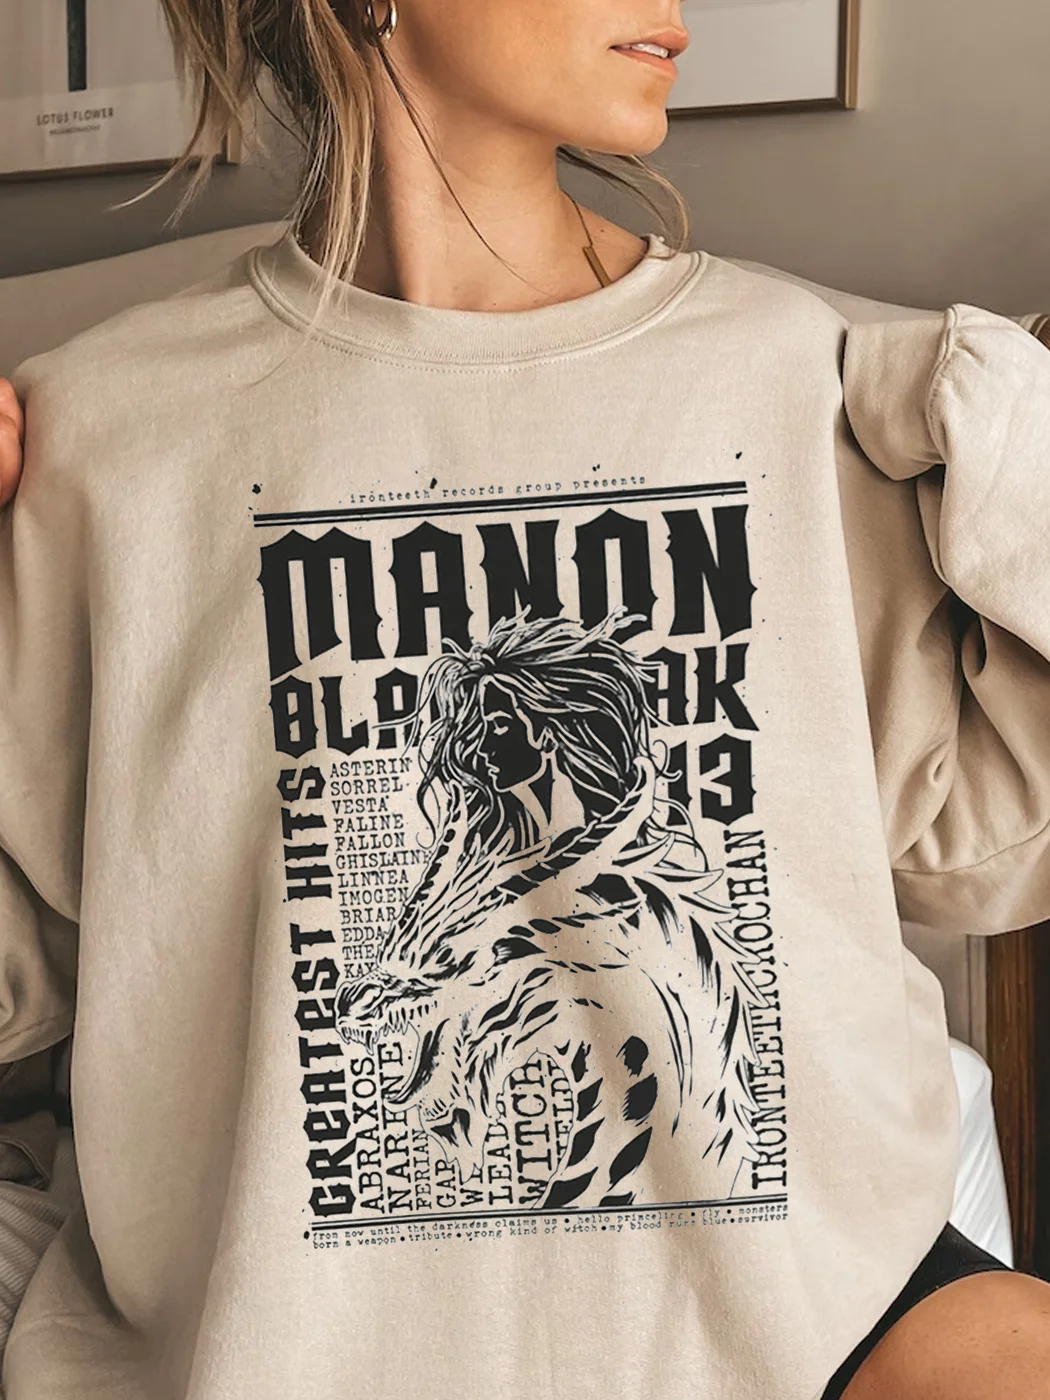 Manon Blackbeak Greatest Hits Concert Sweatshirt / DarkAcademias /Darkacademias